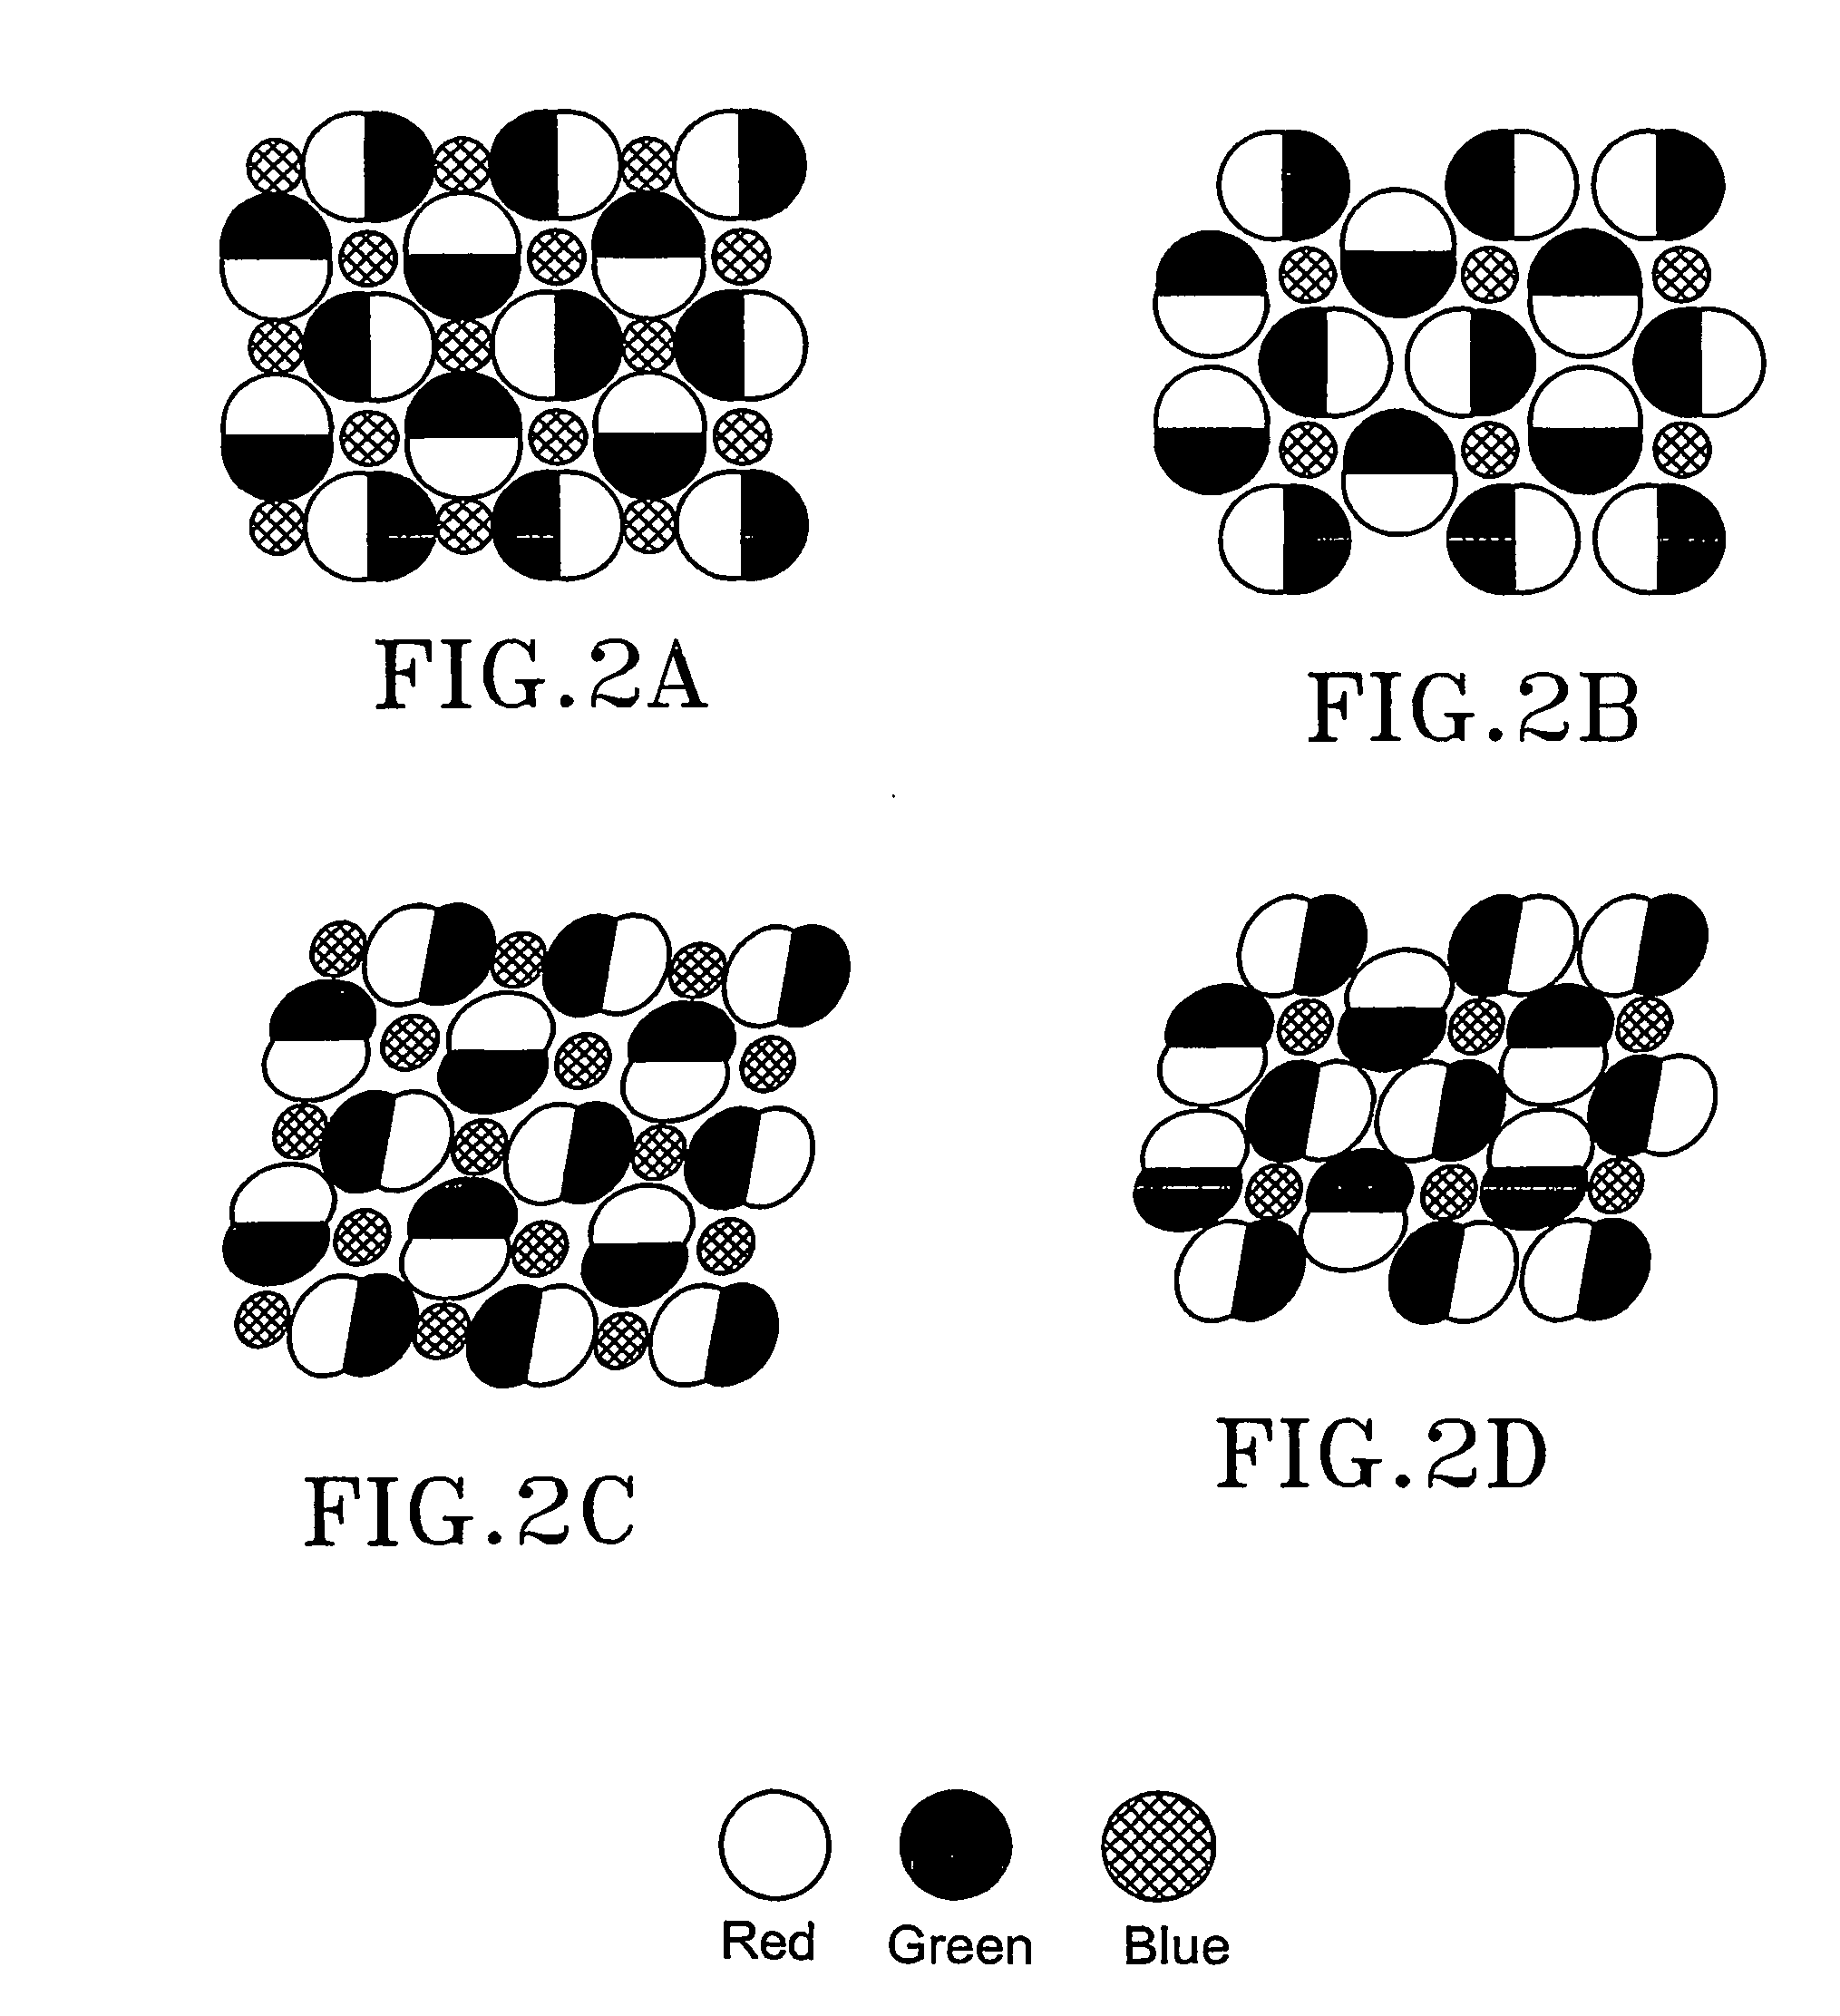 Pixel patterns